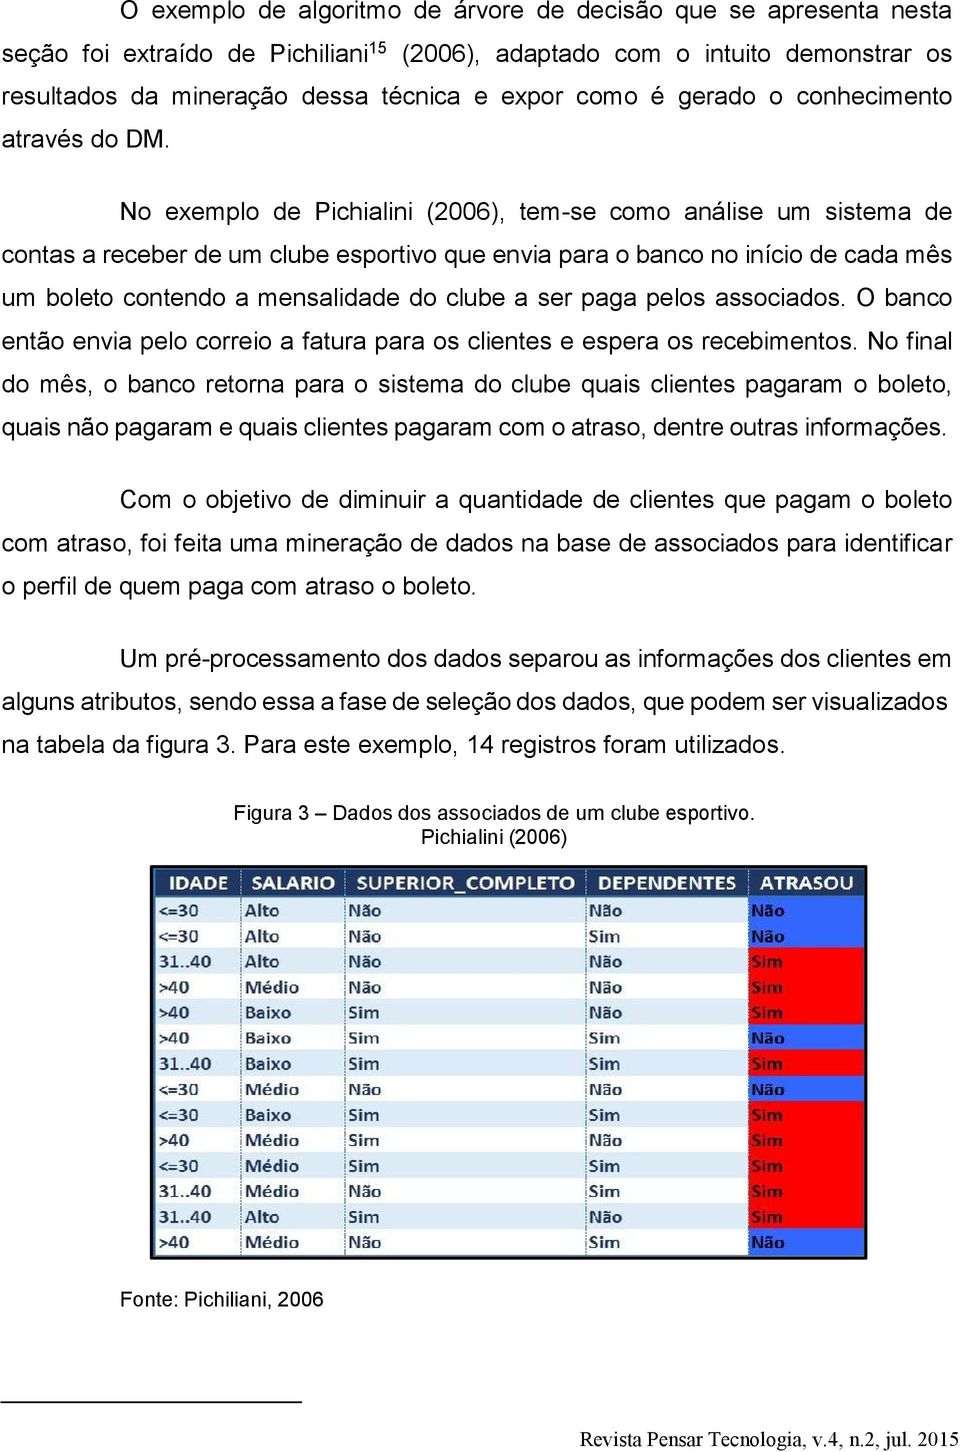 No exemplo de Pichialini (2006), tem-se como análise um sistema de contas a receber de um clube esportivo que envia para o banco no início de cada mês um boleto contendo a mensalidade do clube a ser